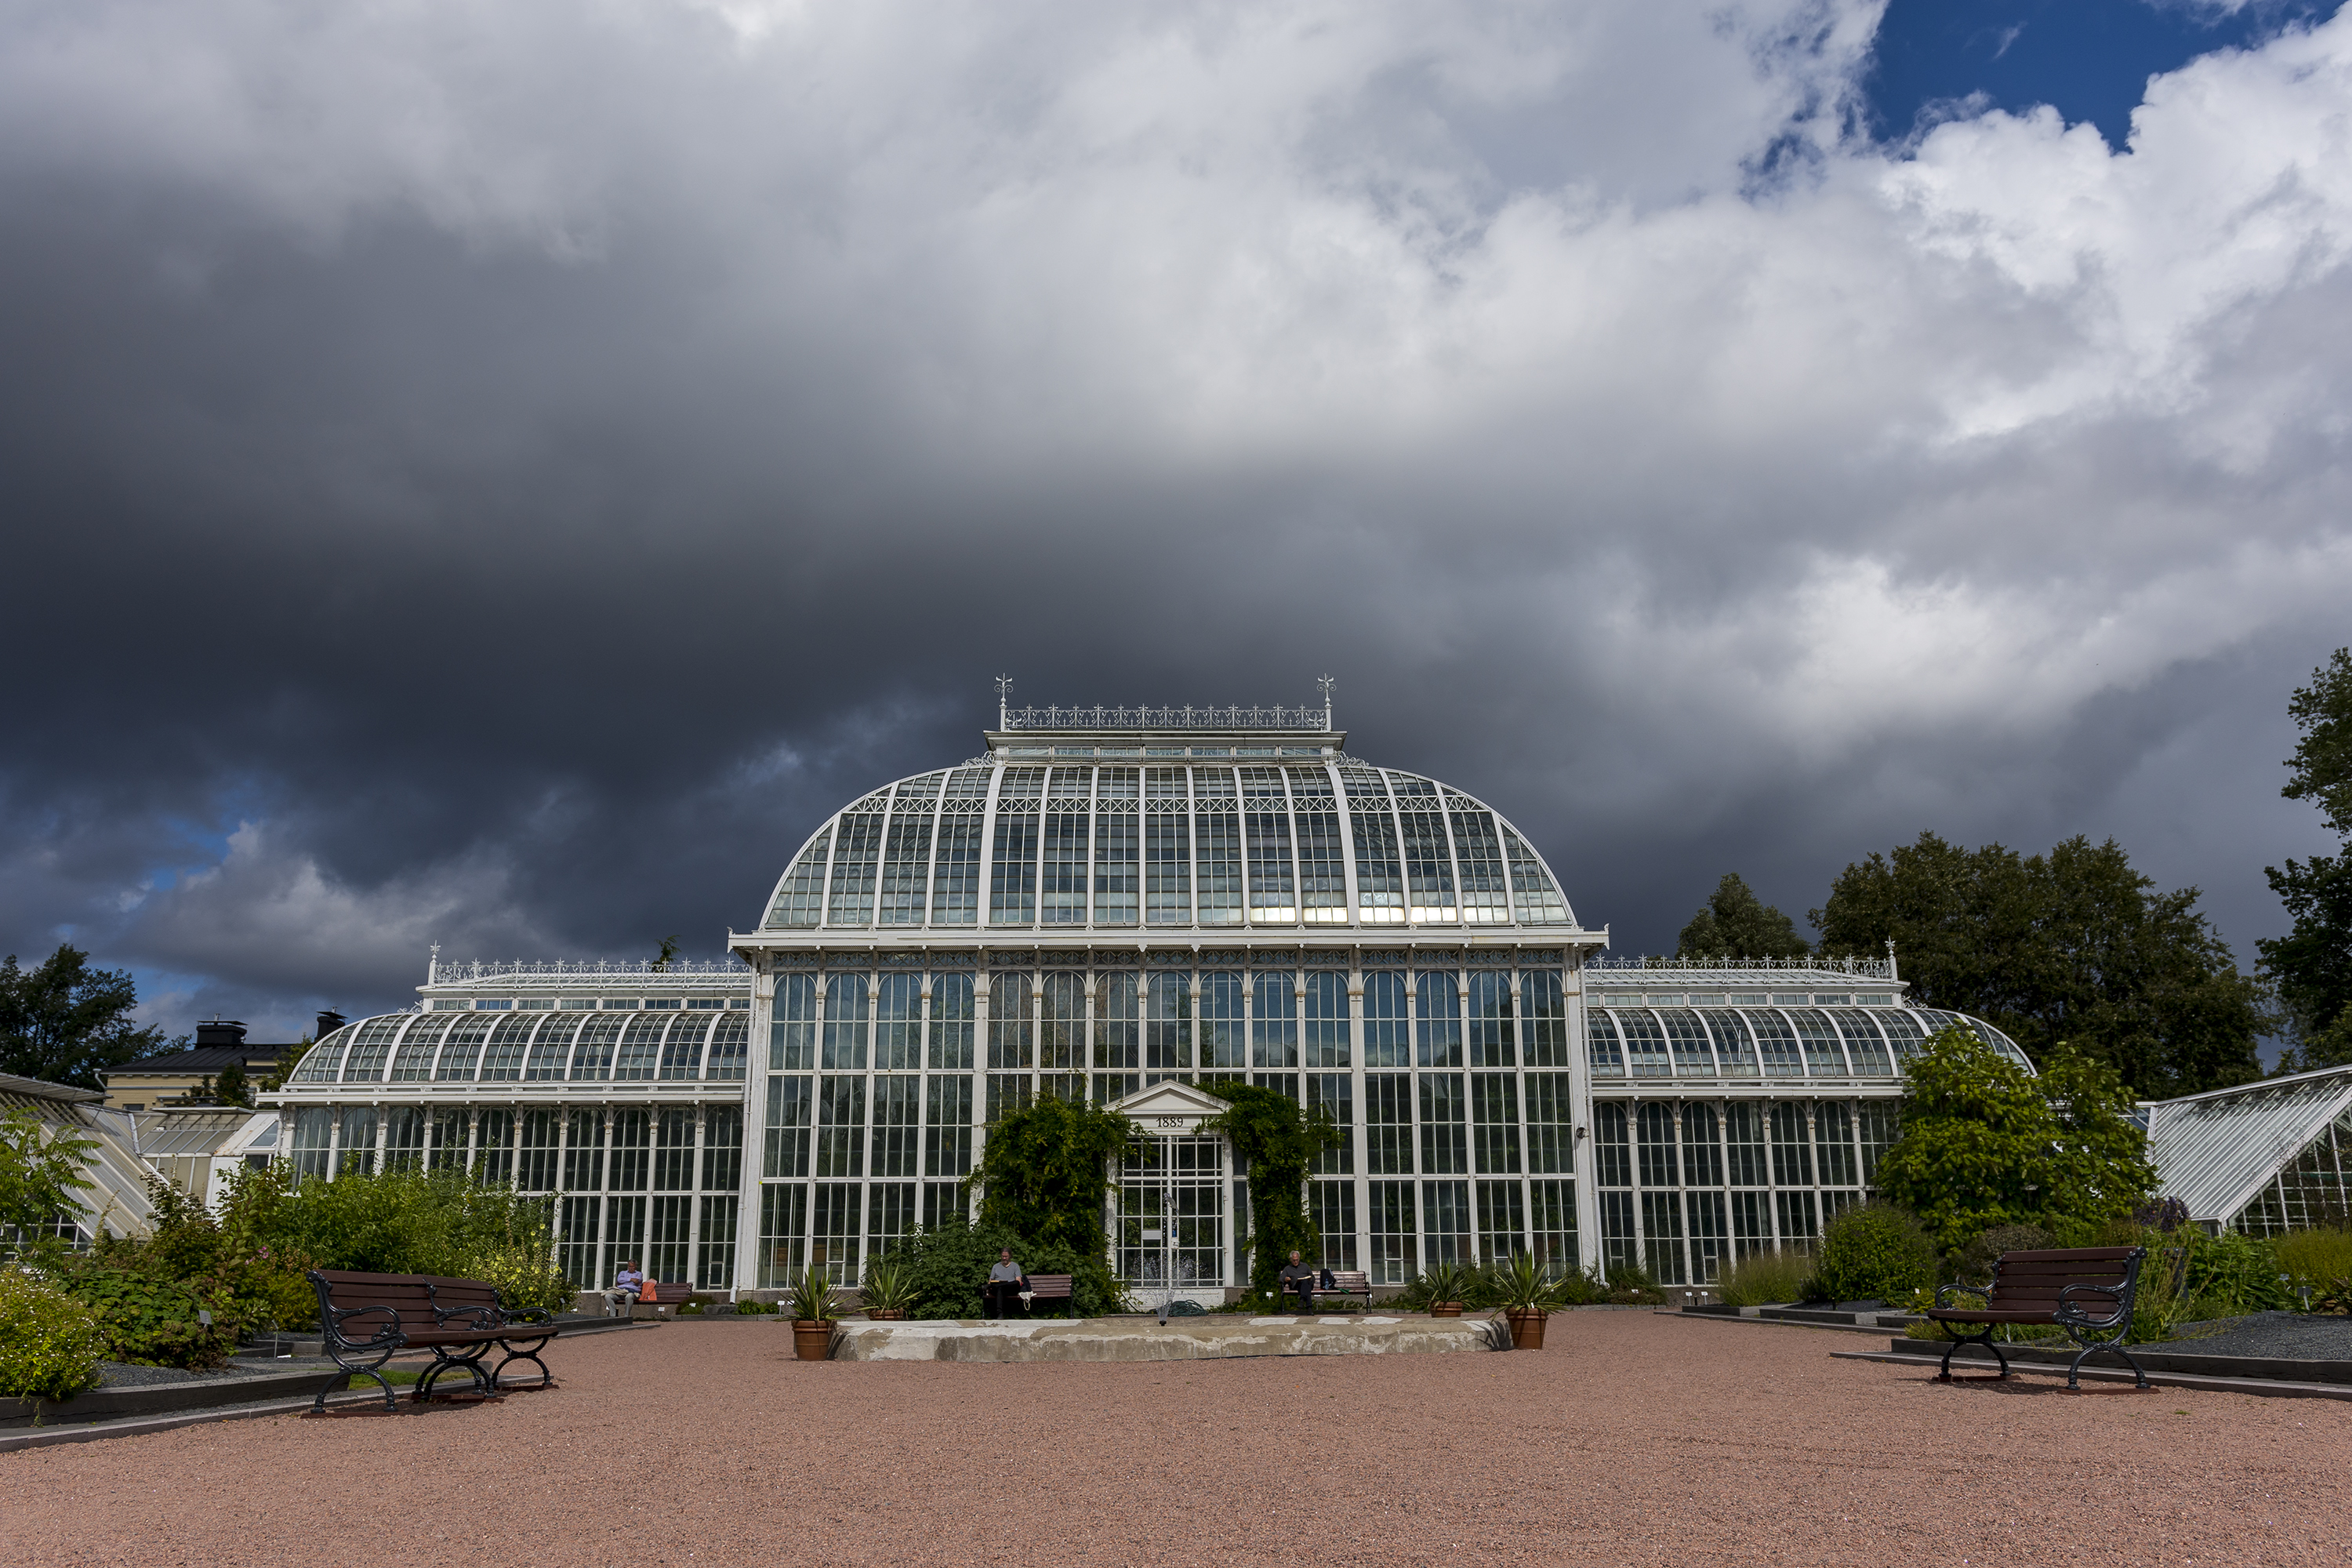 Ботанический сад Петра Великого в Санкт-Петербурге